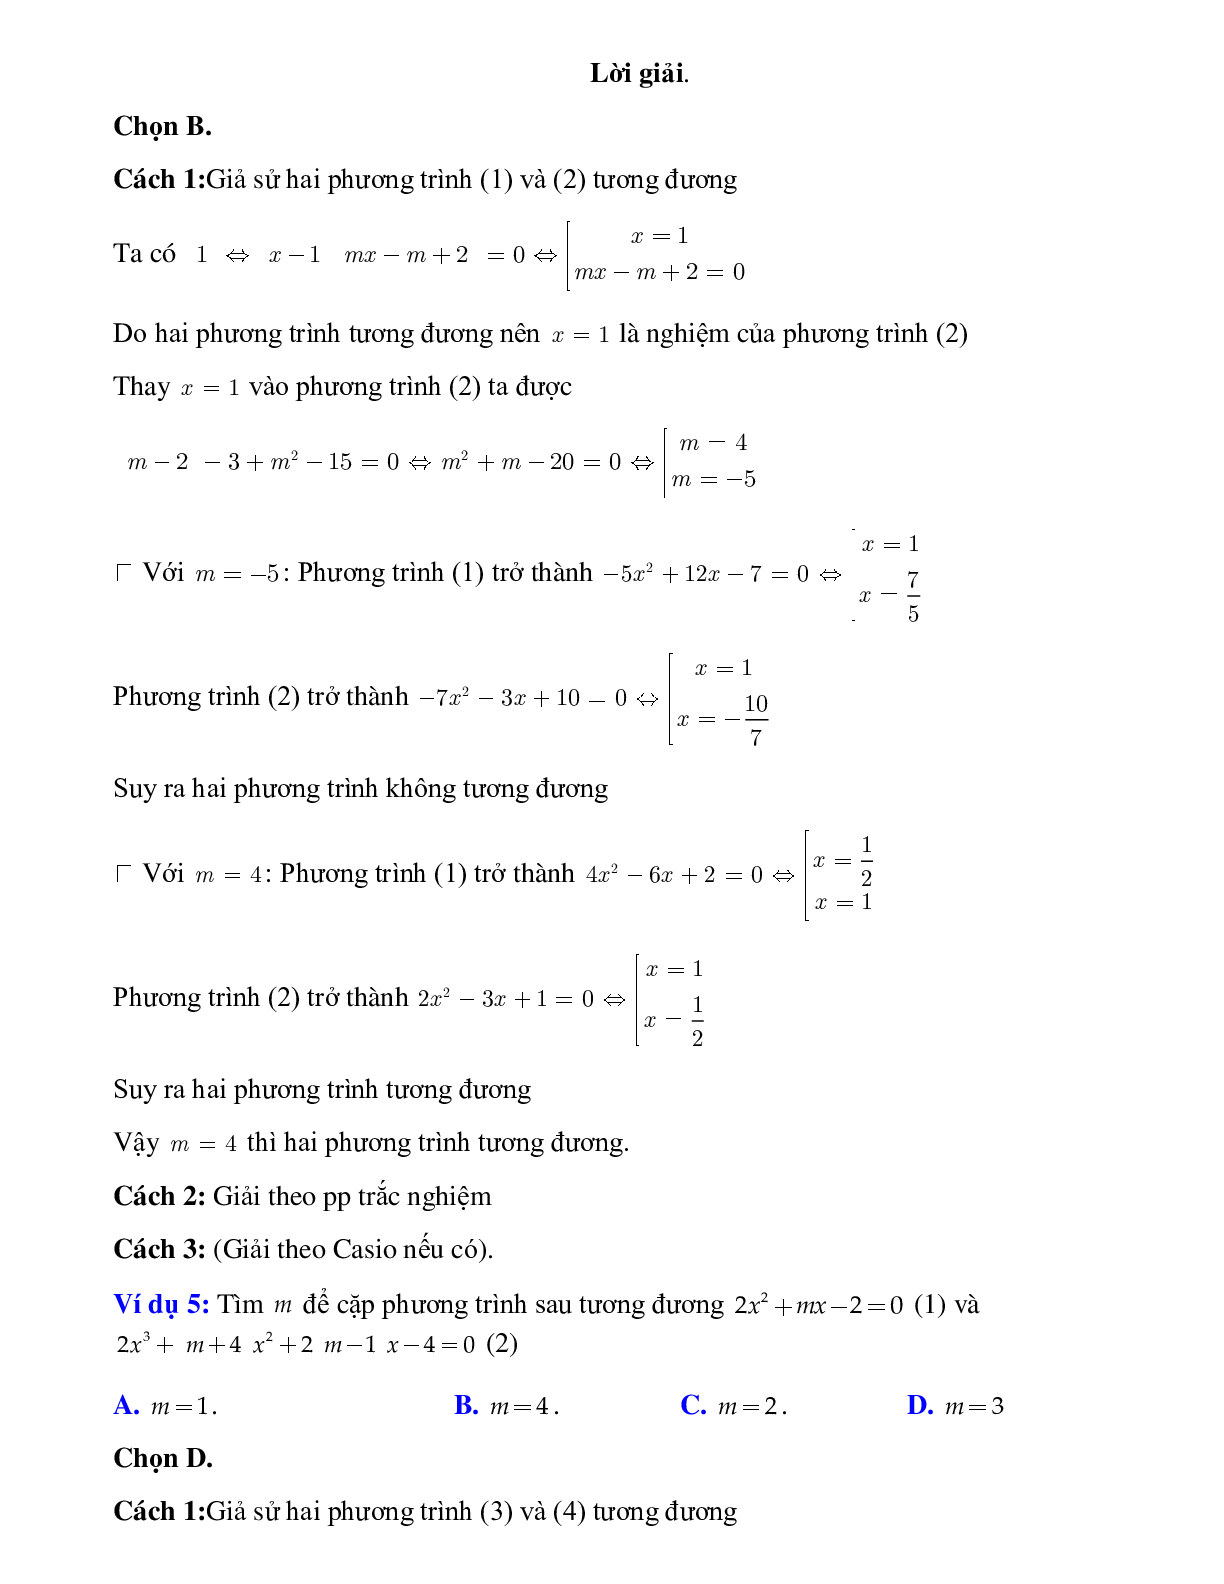 Phương trình tương đương, phương trình hệ quả (trang 3)